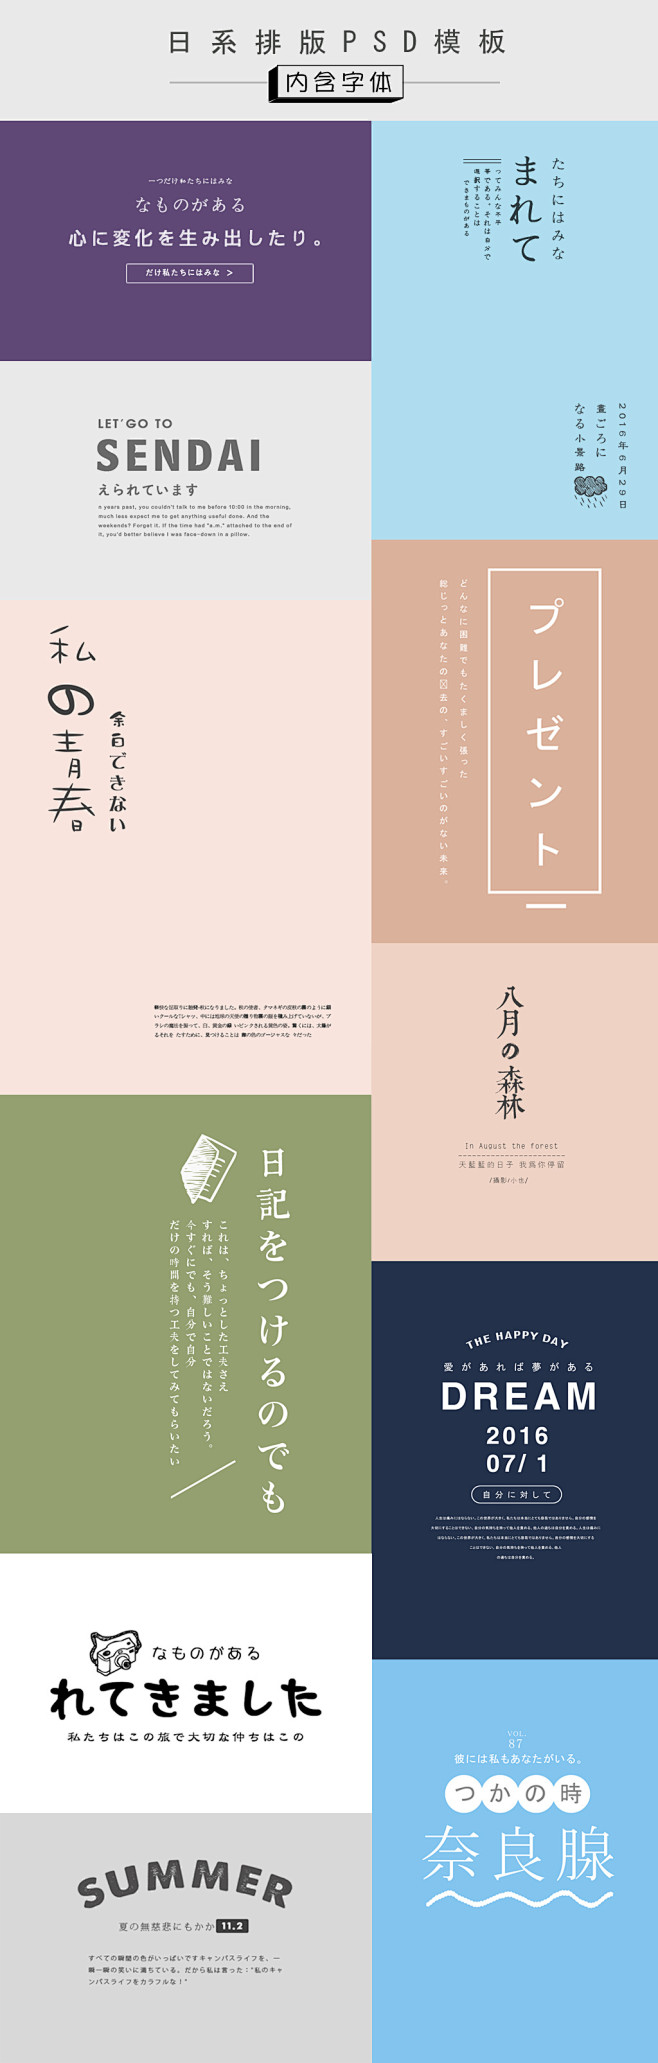 日系文字摄影排版psd模板